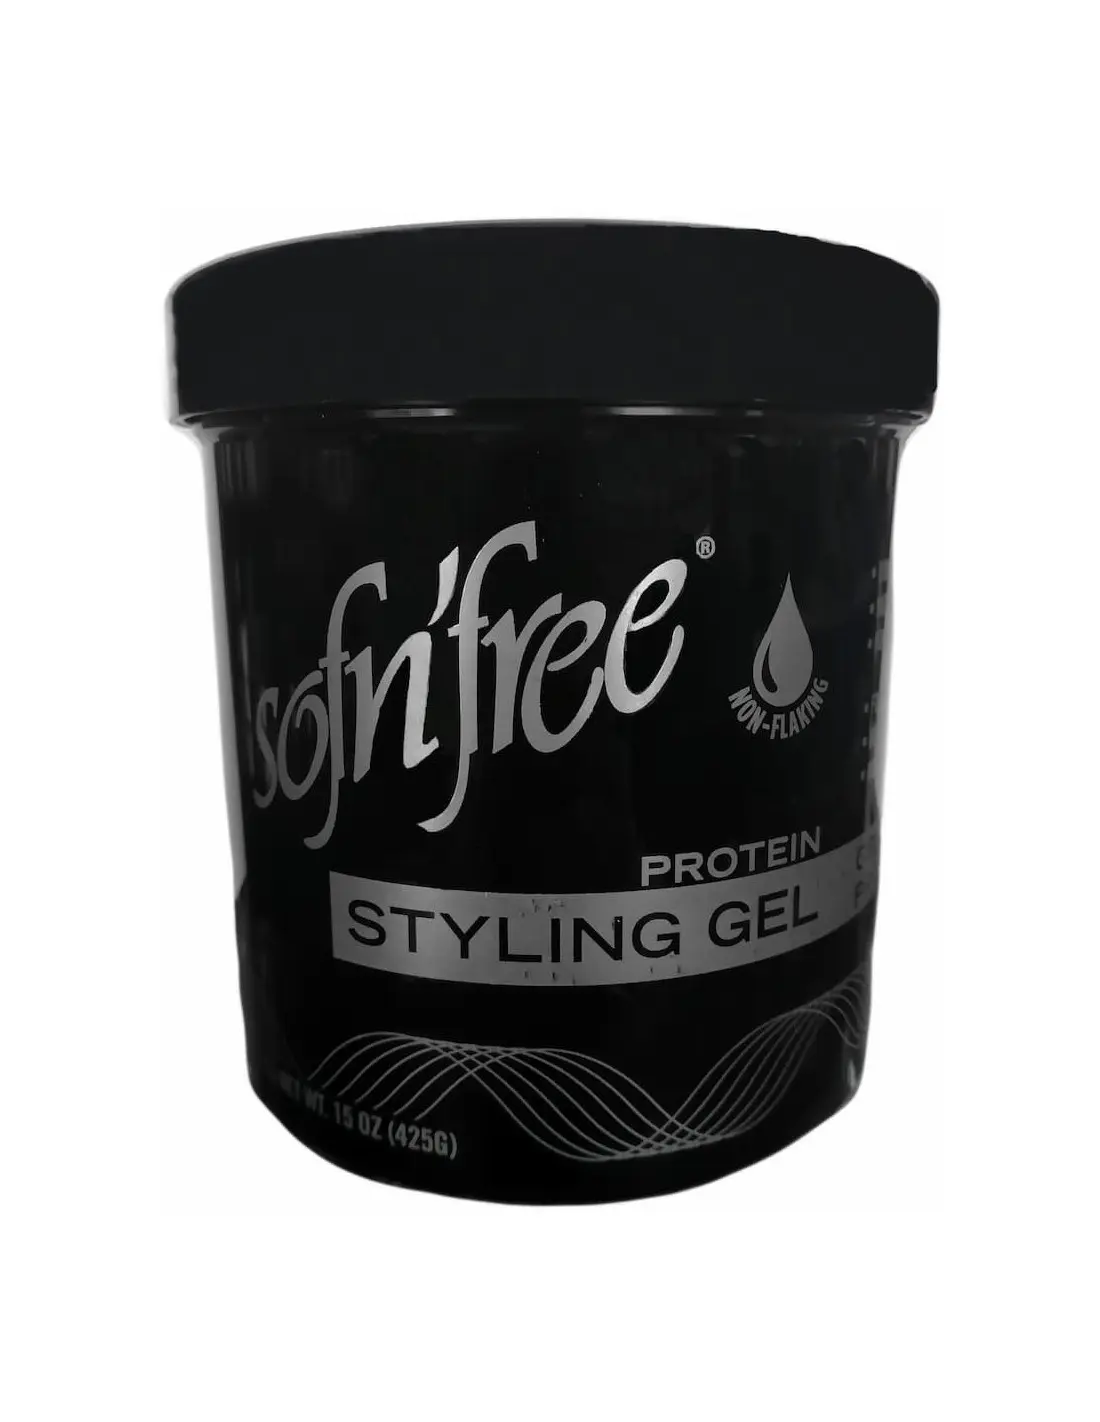 Styling Τζελ Μαλλιών Protein SofnFree Black 425gr